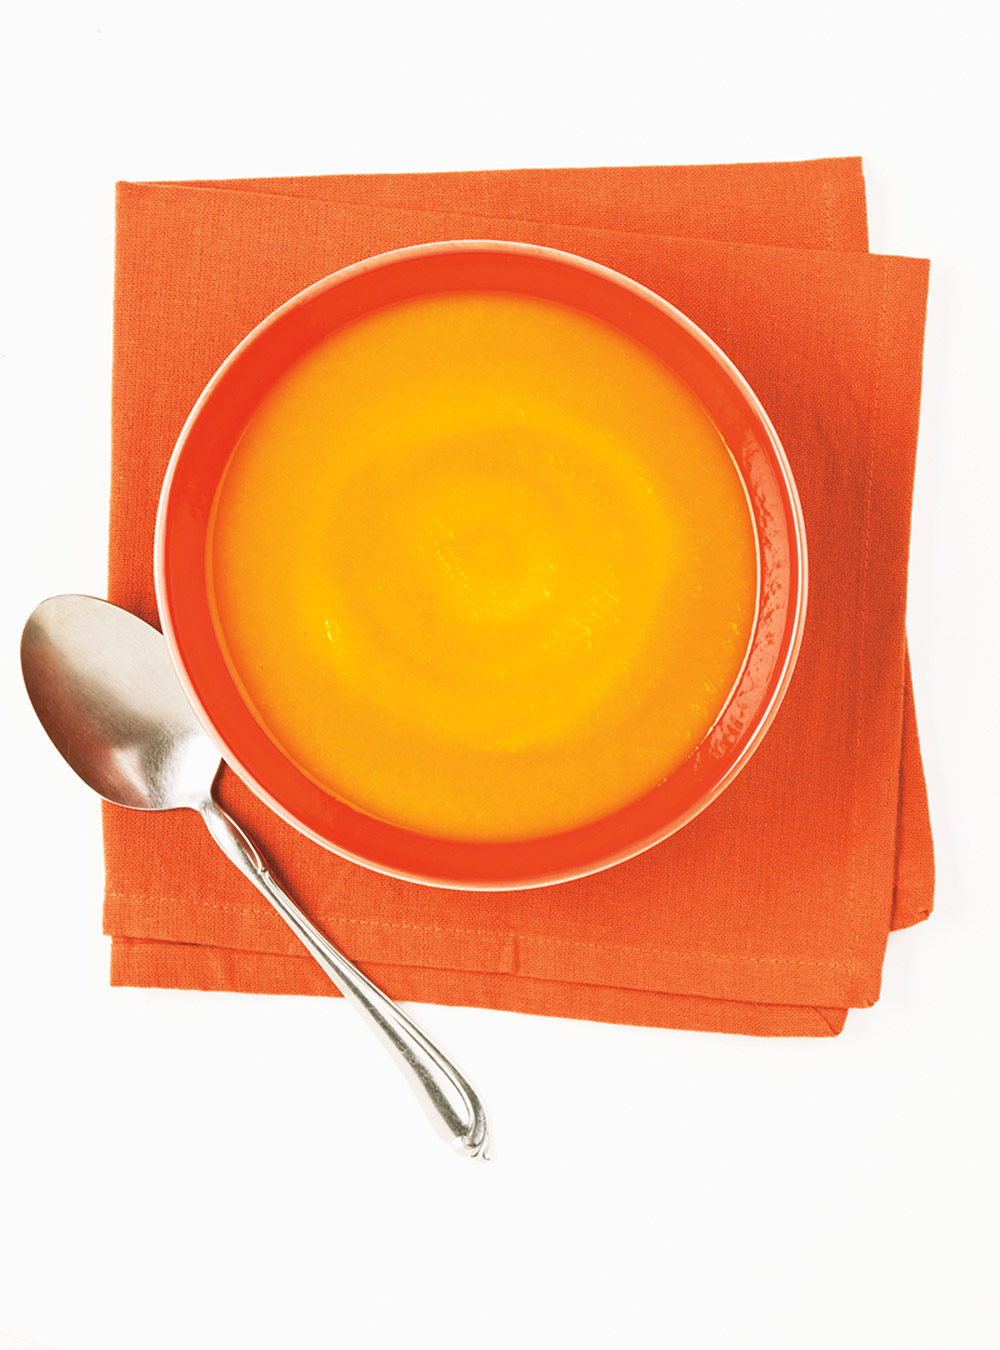 Potage aux carottes (2) | ricardo